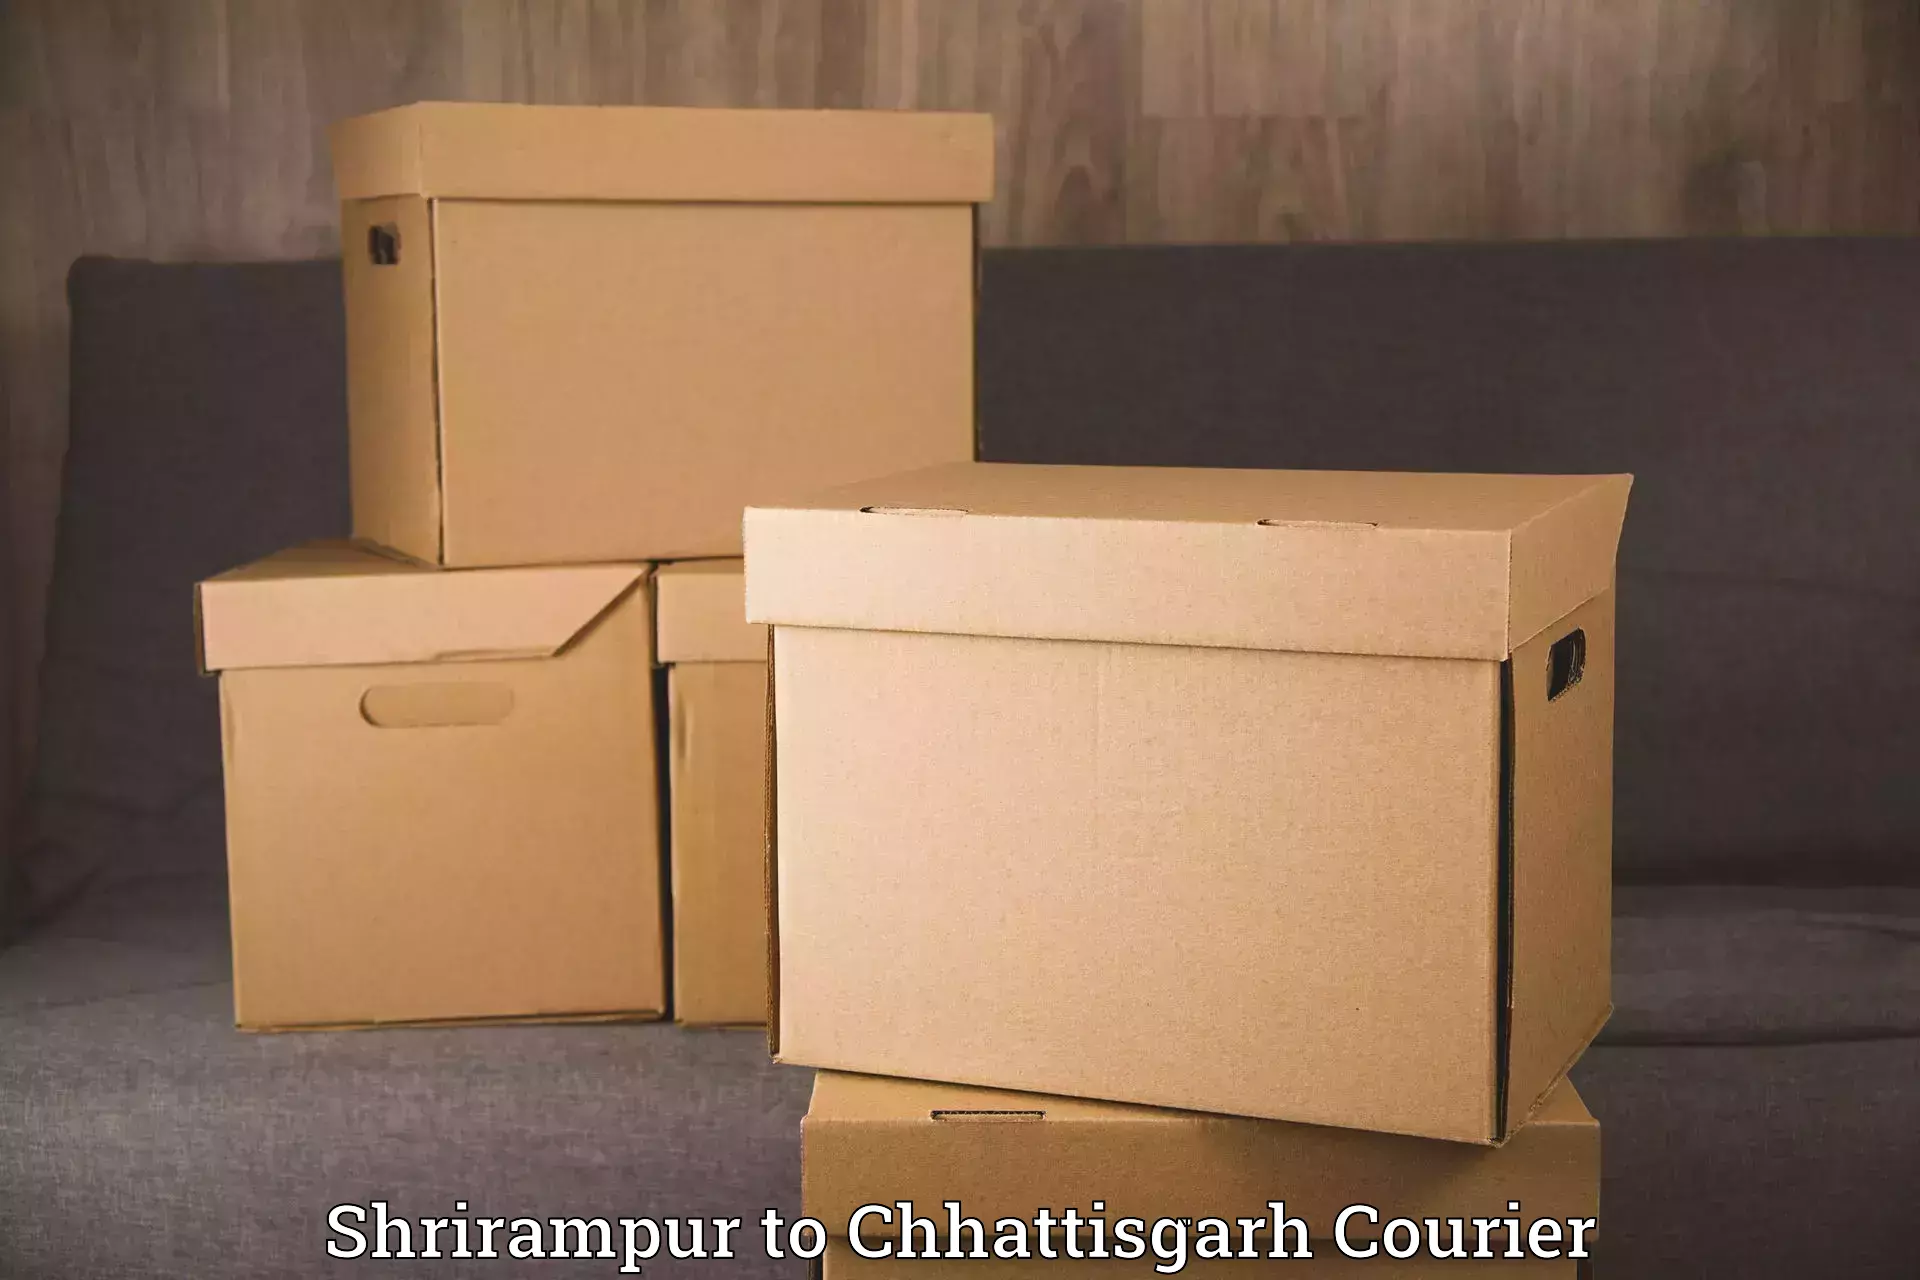 Trusted relocation services Shrirampur to Chhattisgarh